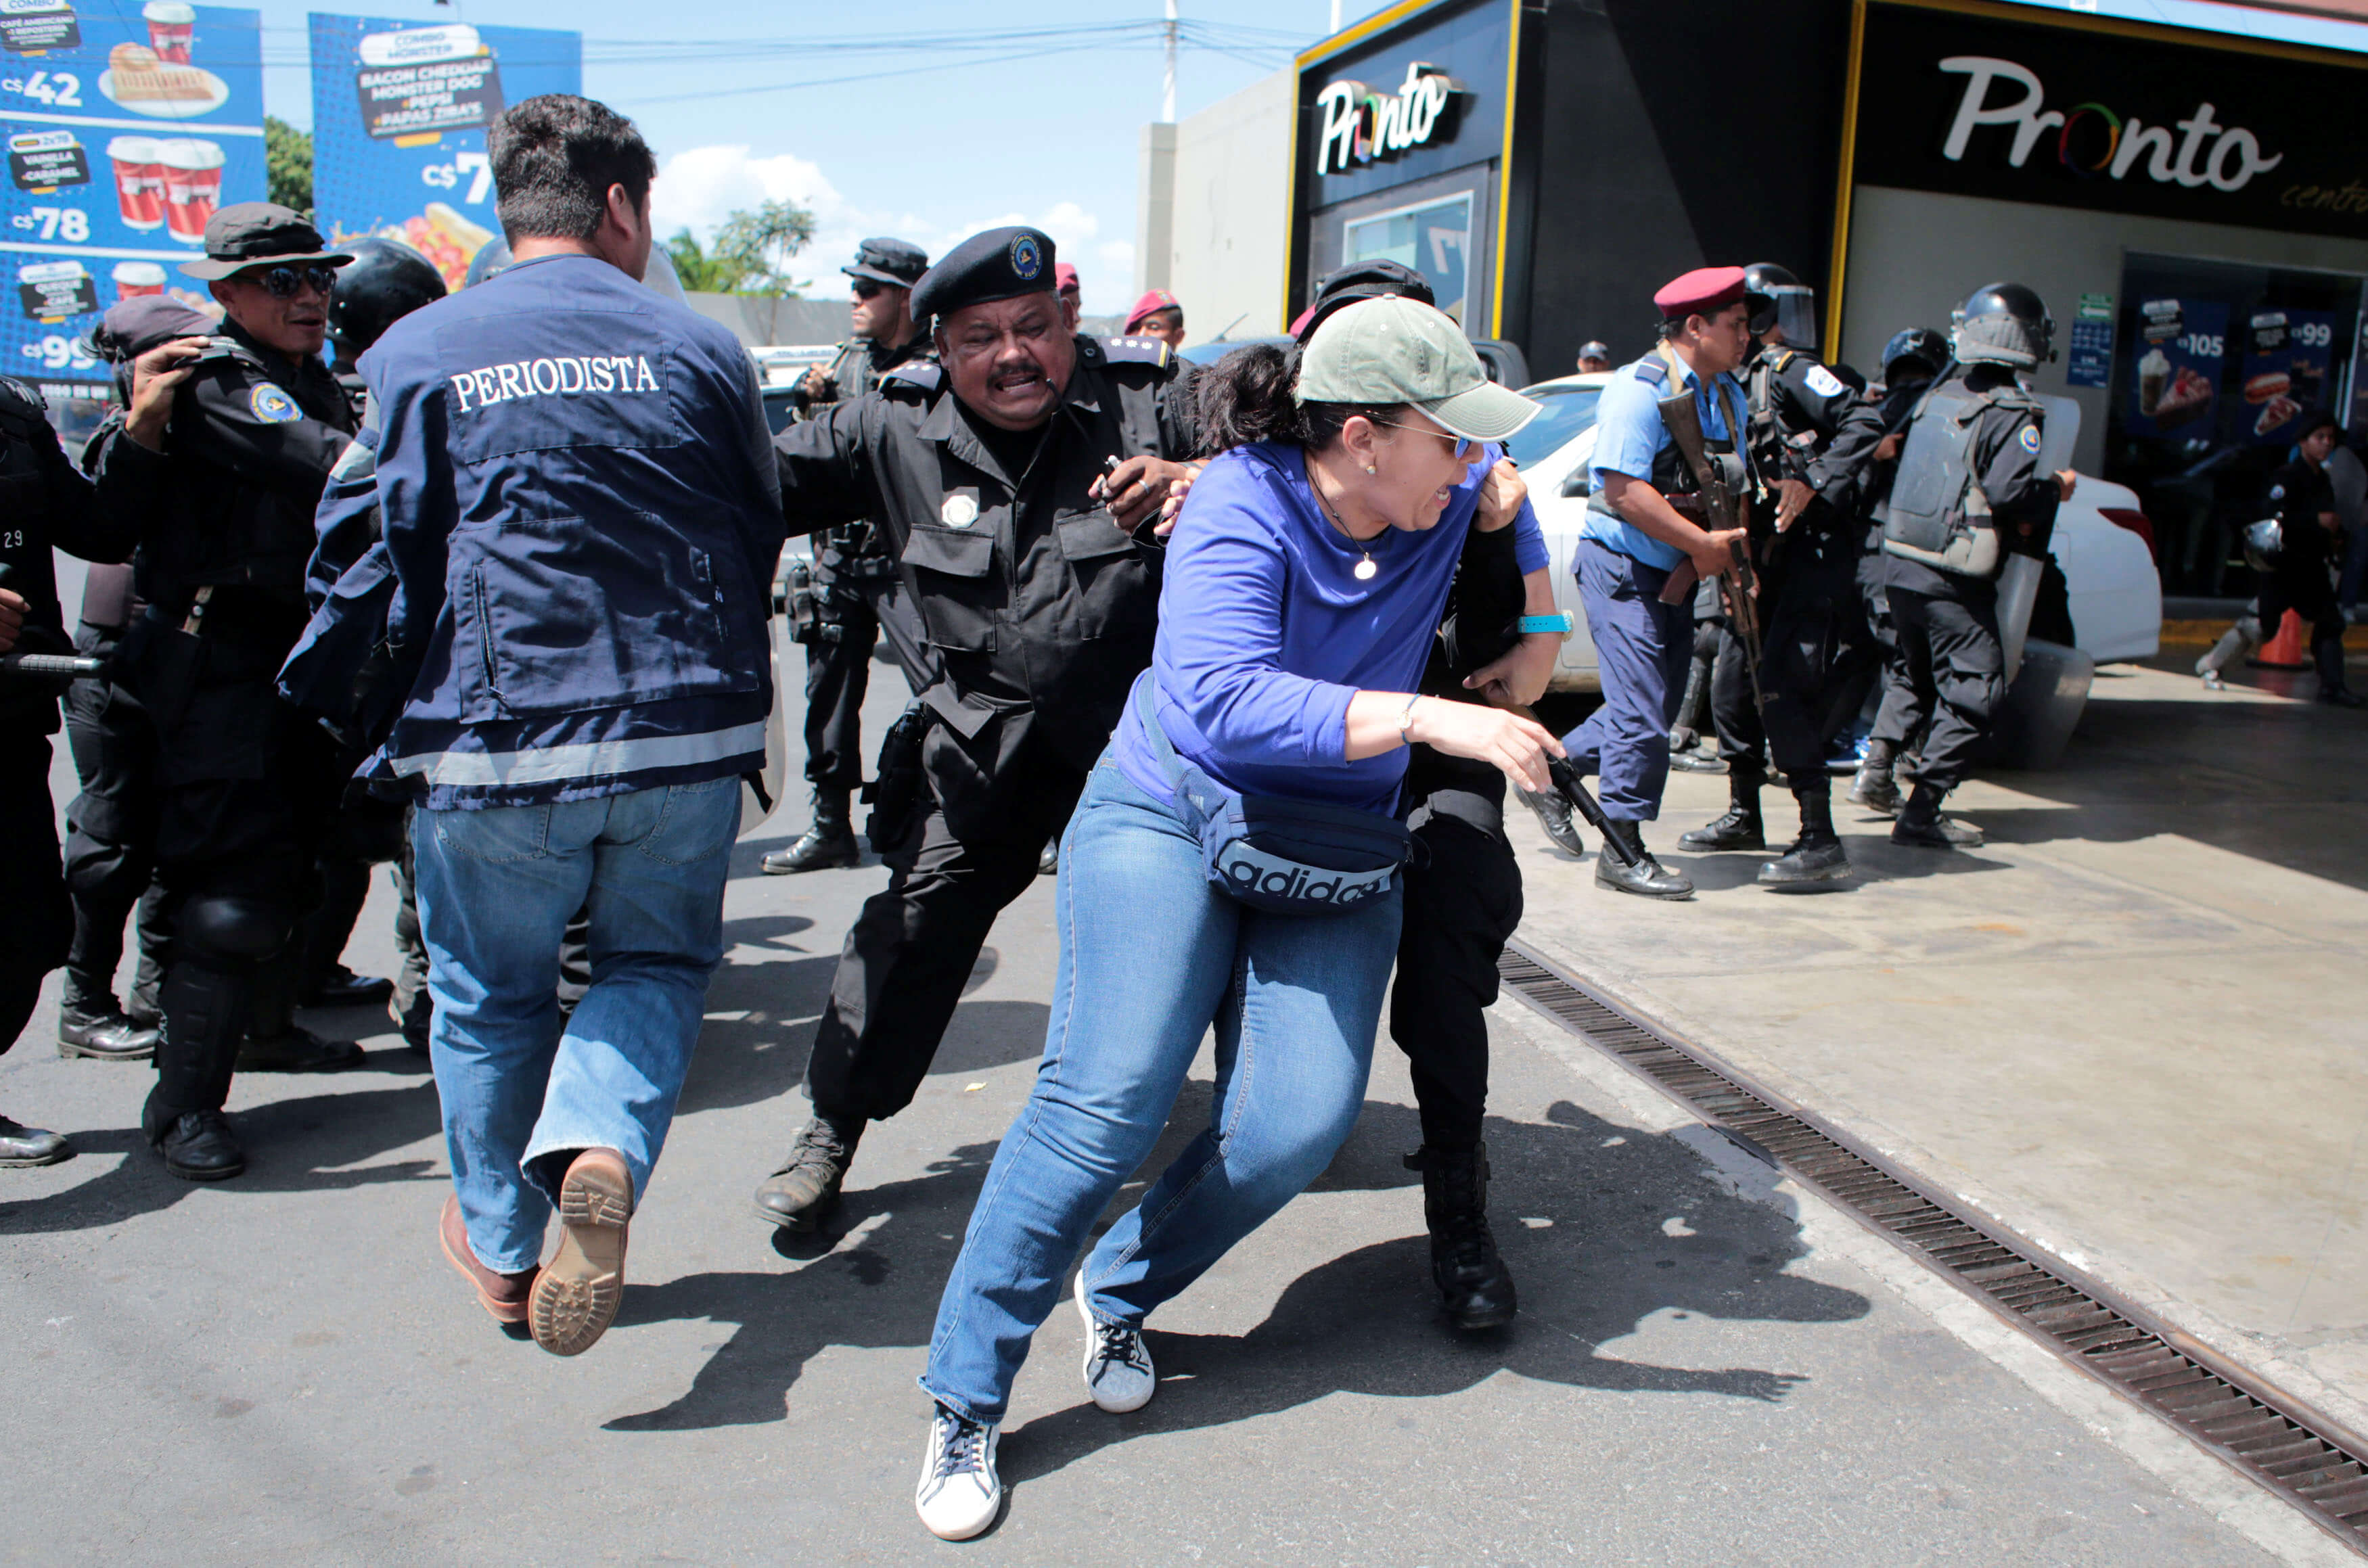 Foto: Policías nicaragüense dispersan una manifestación contra el presidente Daniel Ortega en calles de Managua. El 16 der marzo de 2019